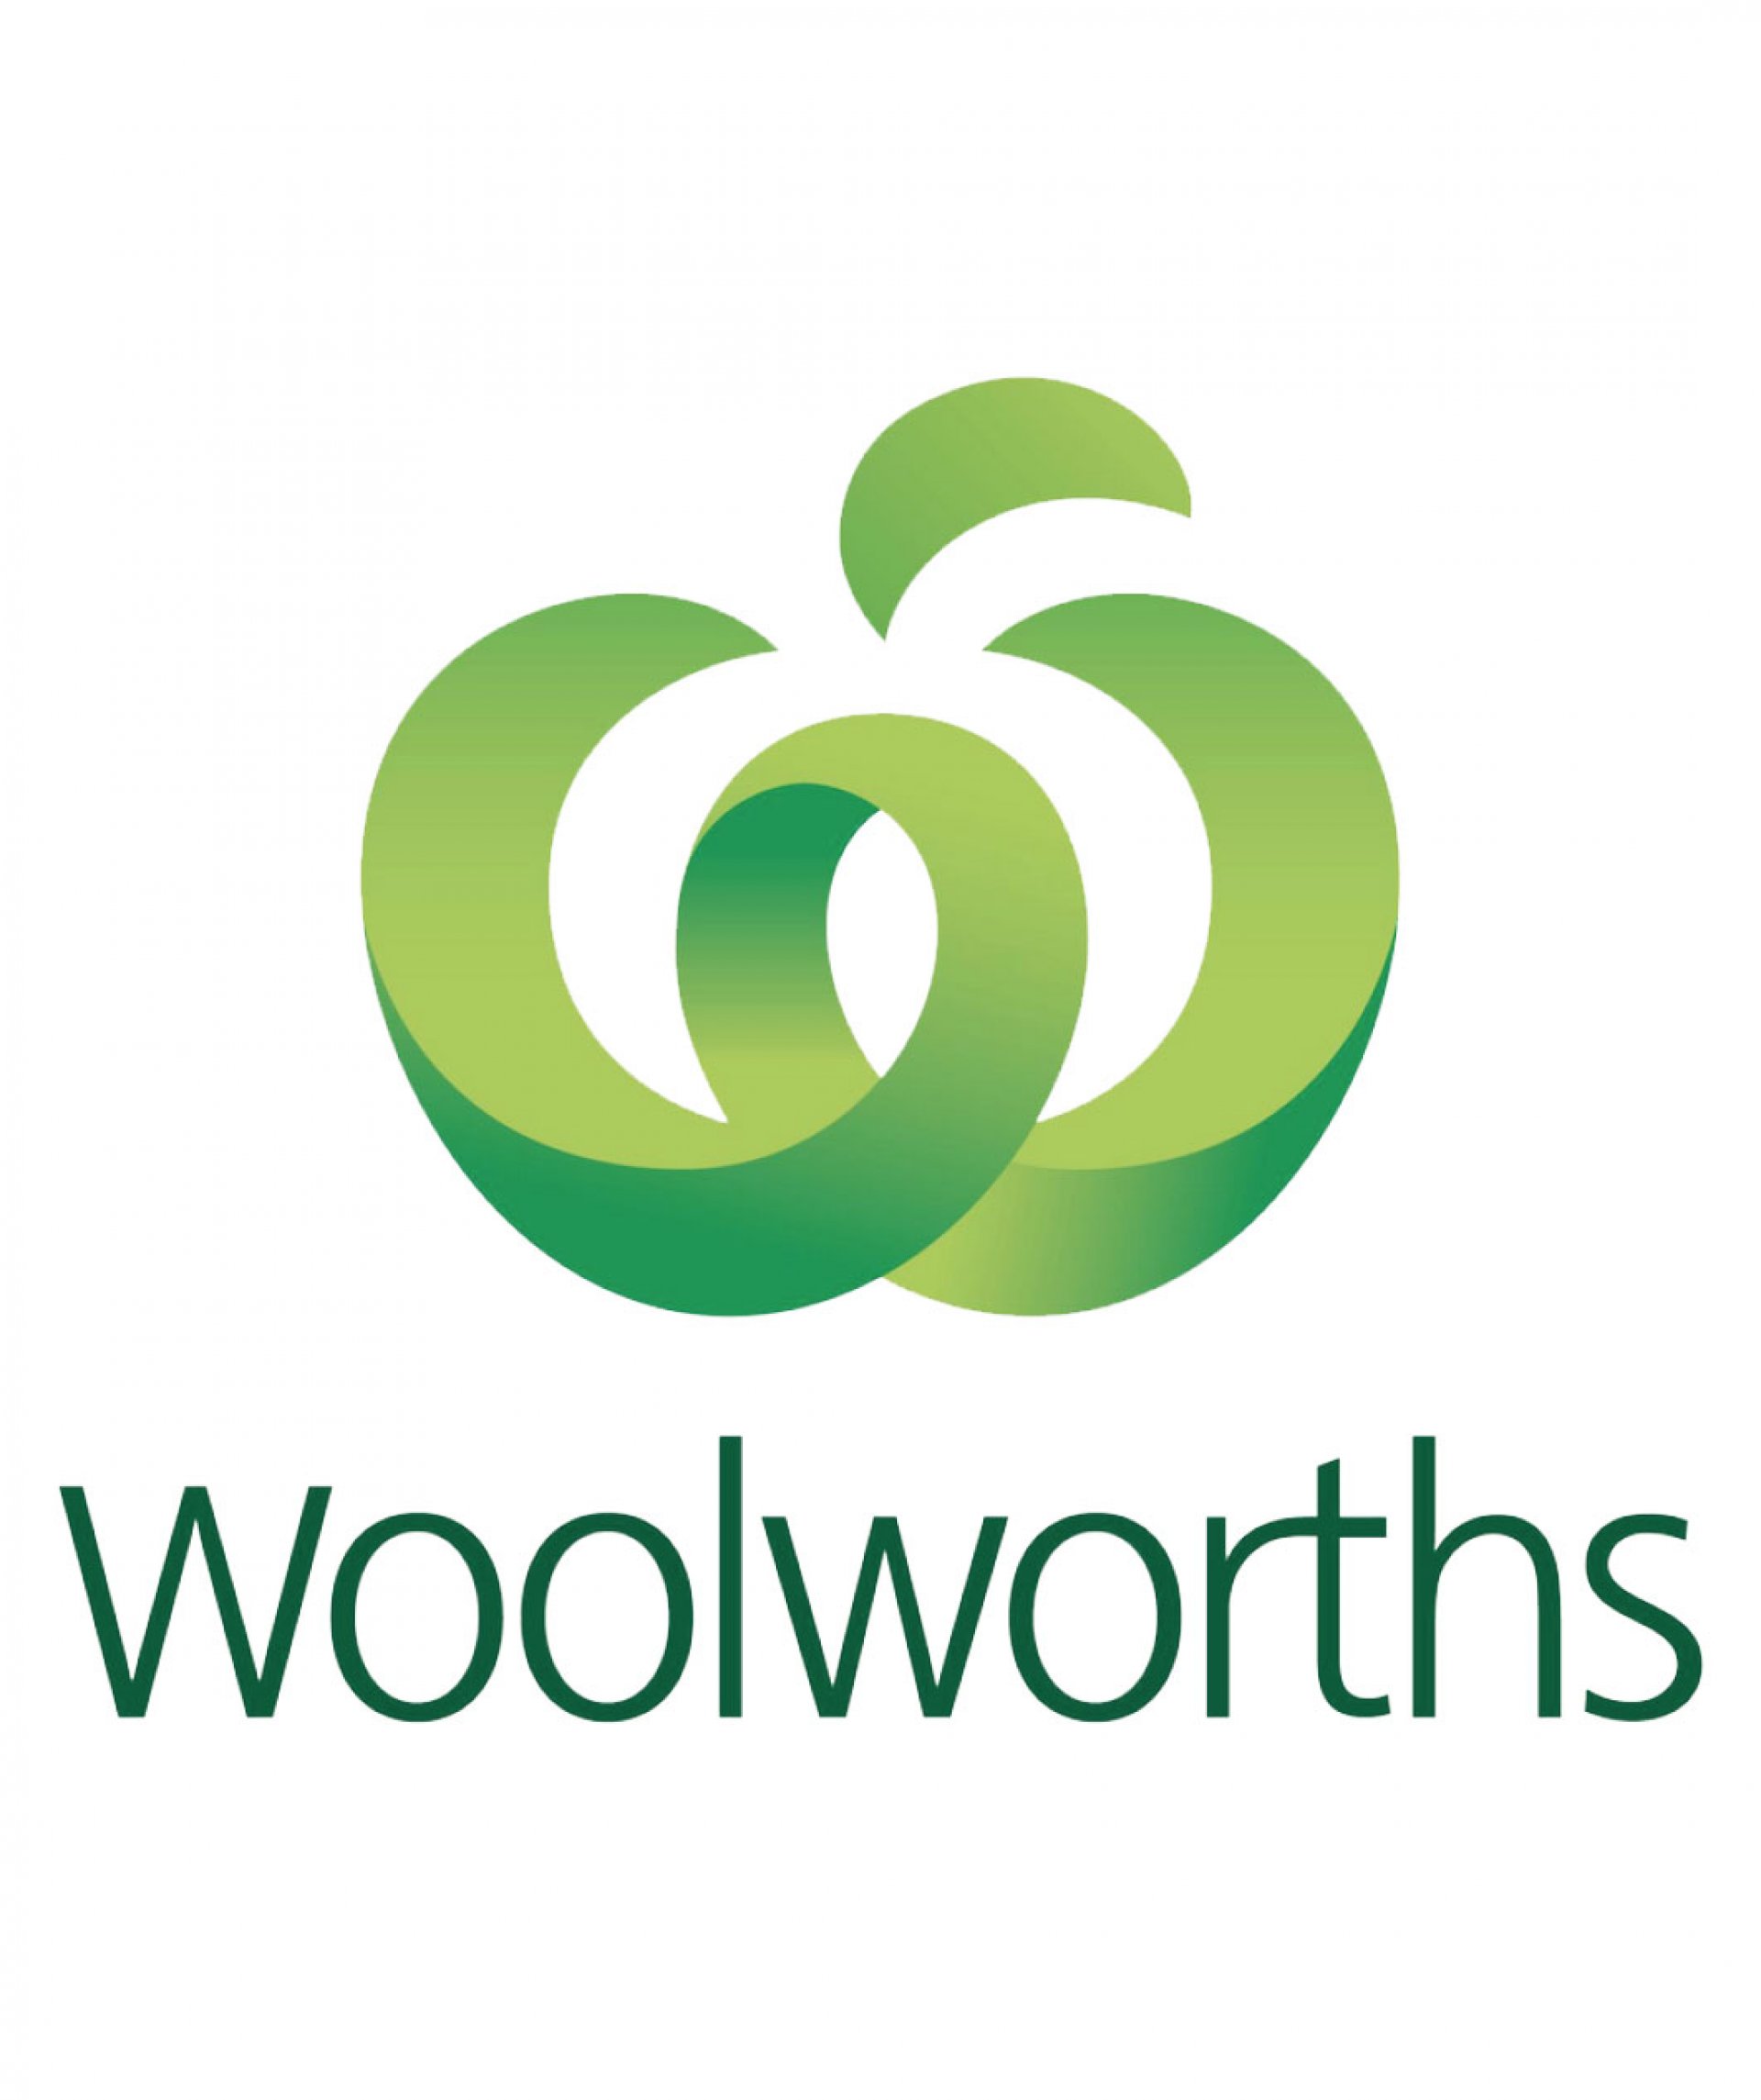 WOOLWORTHS / Australia